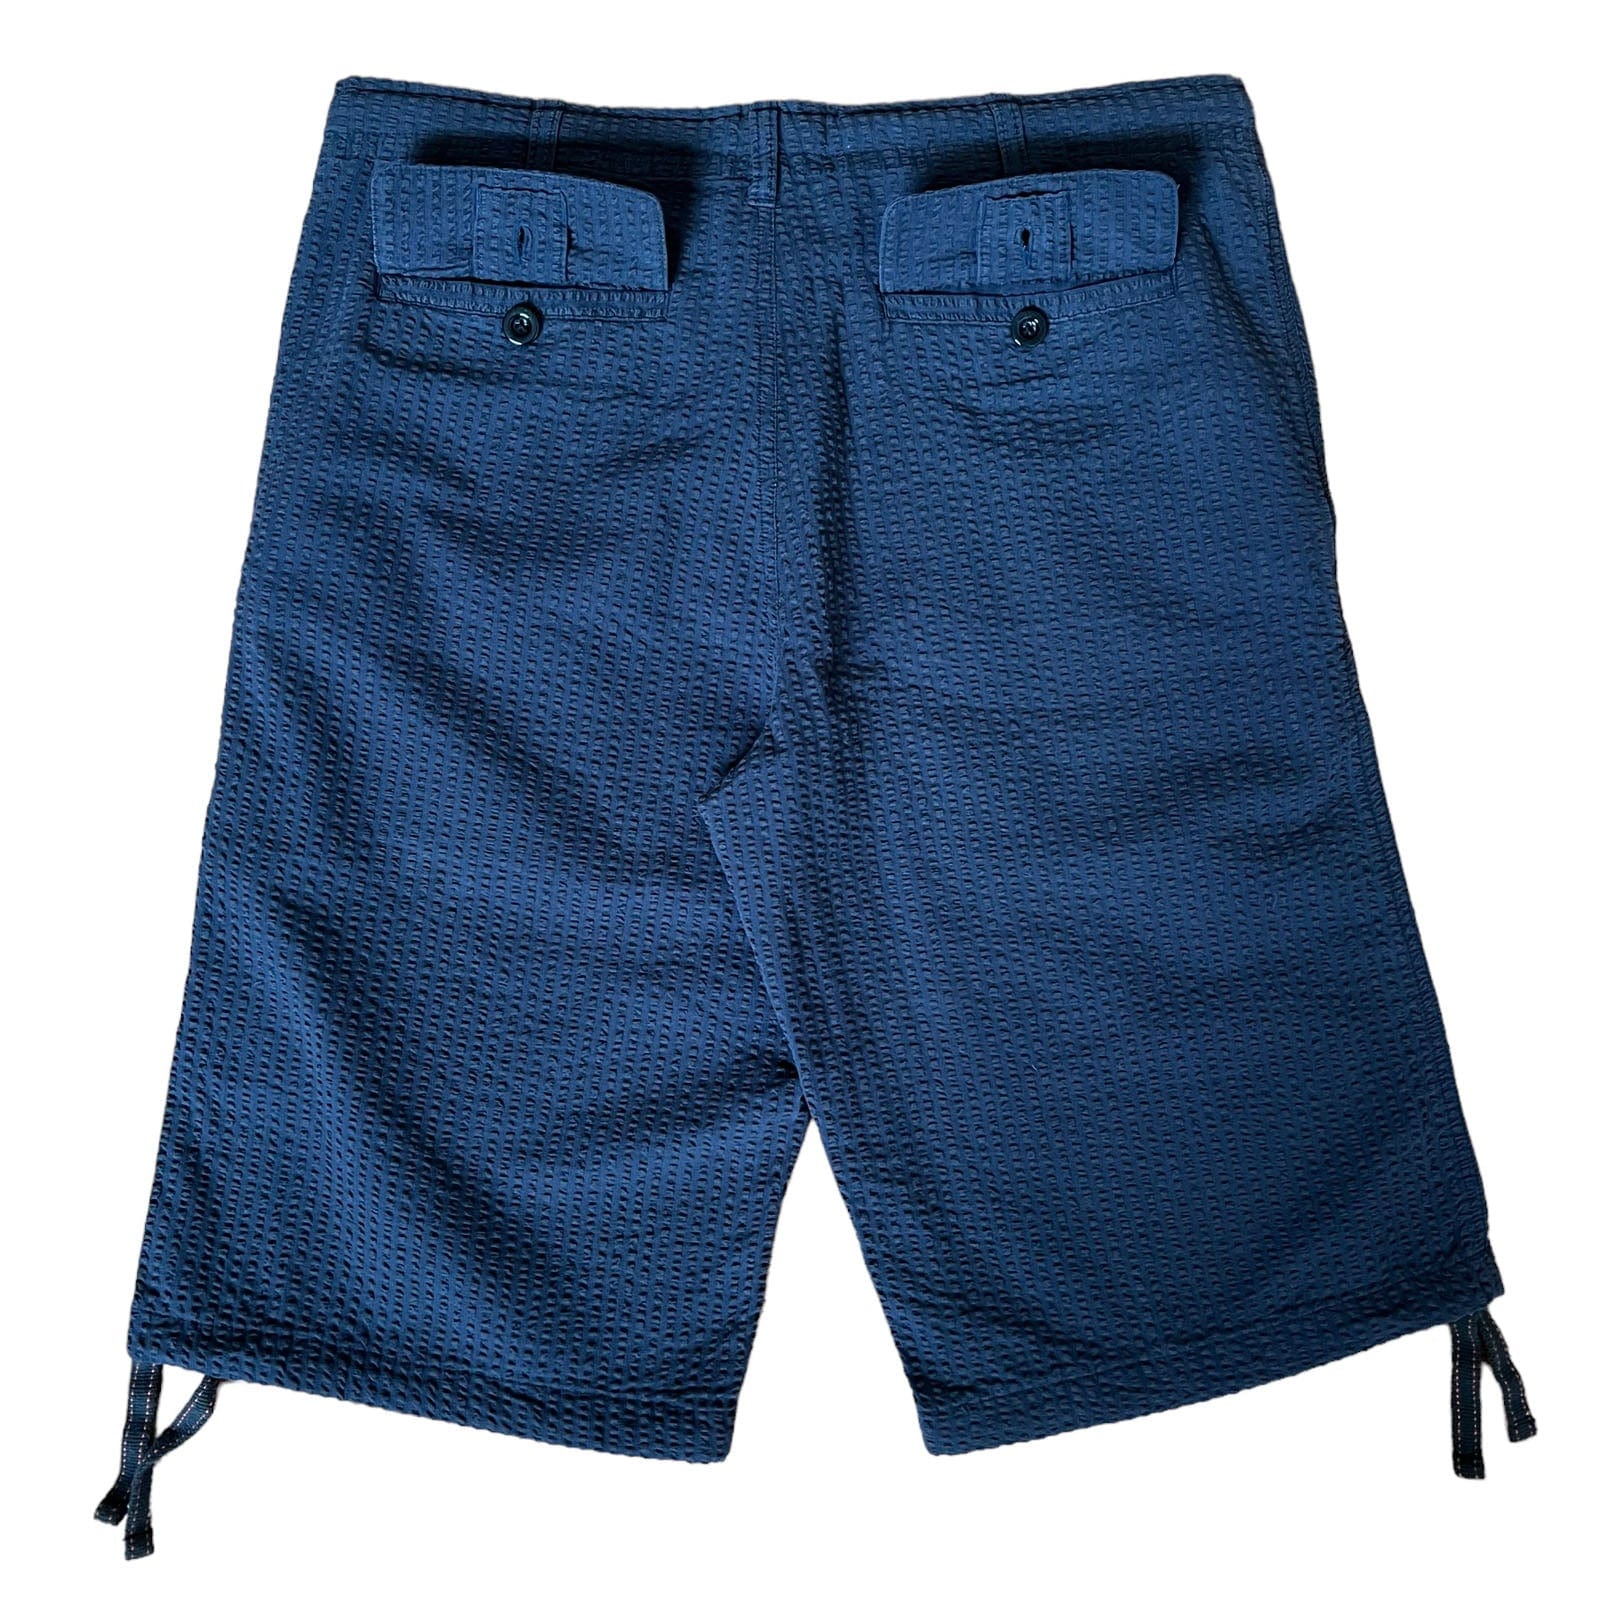 SKIDZ Shorts Seersucker Shorts - Dark Blue Striped